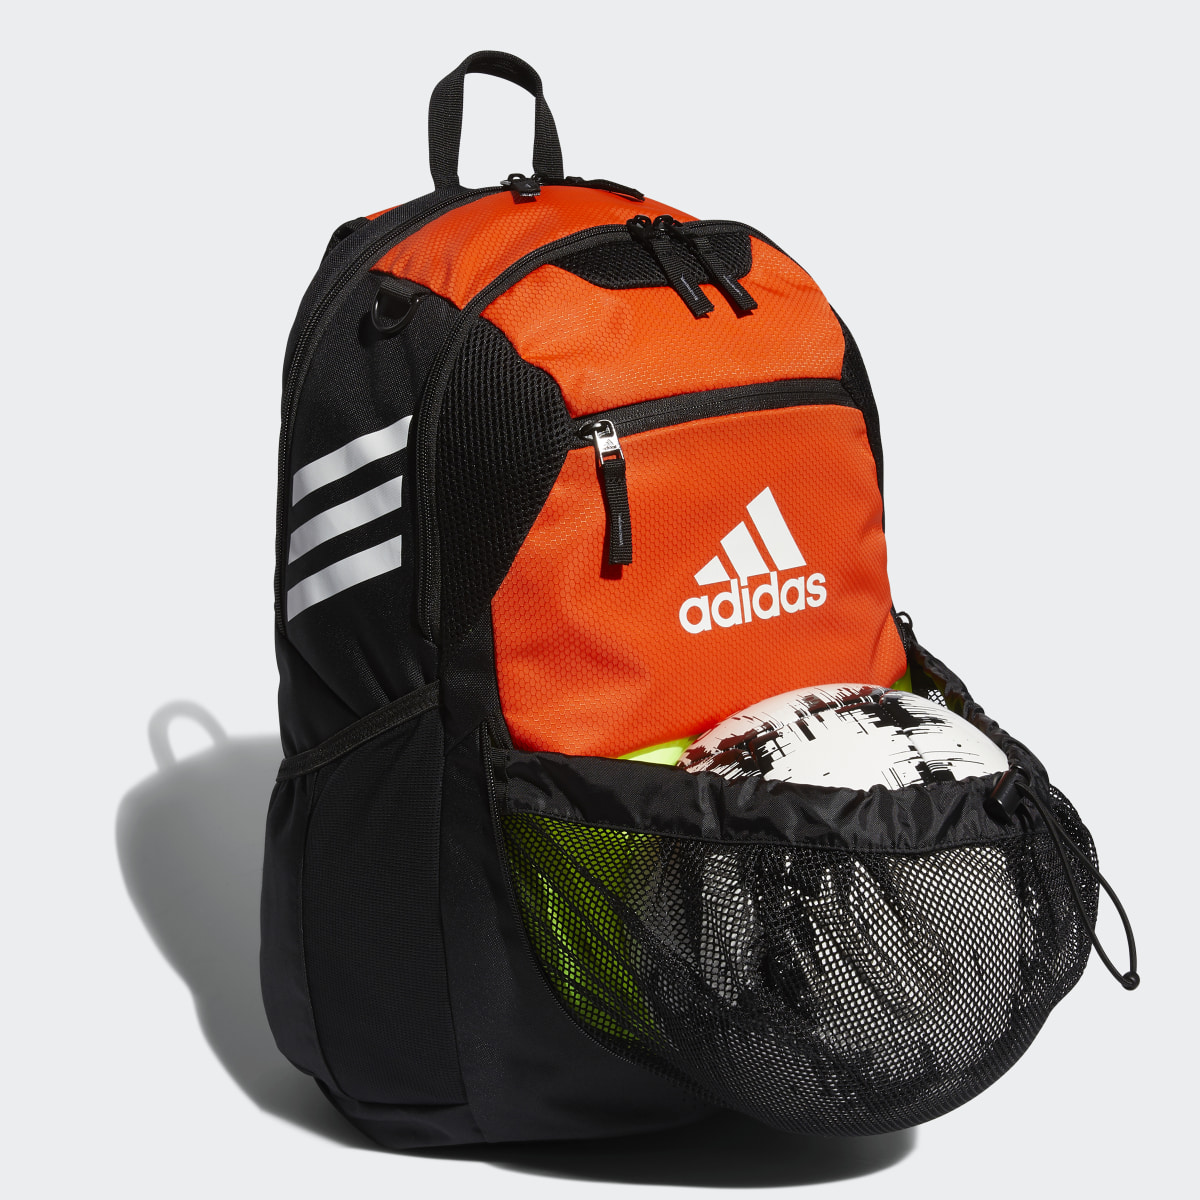 Adidas Stadium Backpack. 4